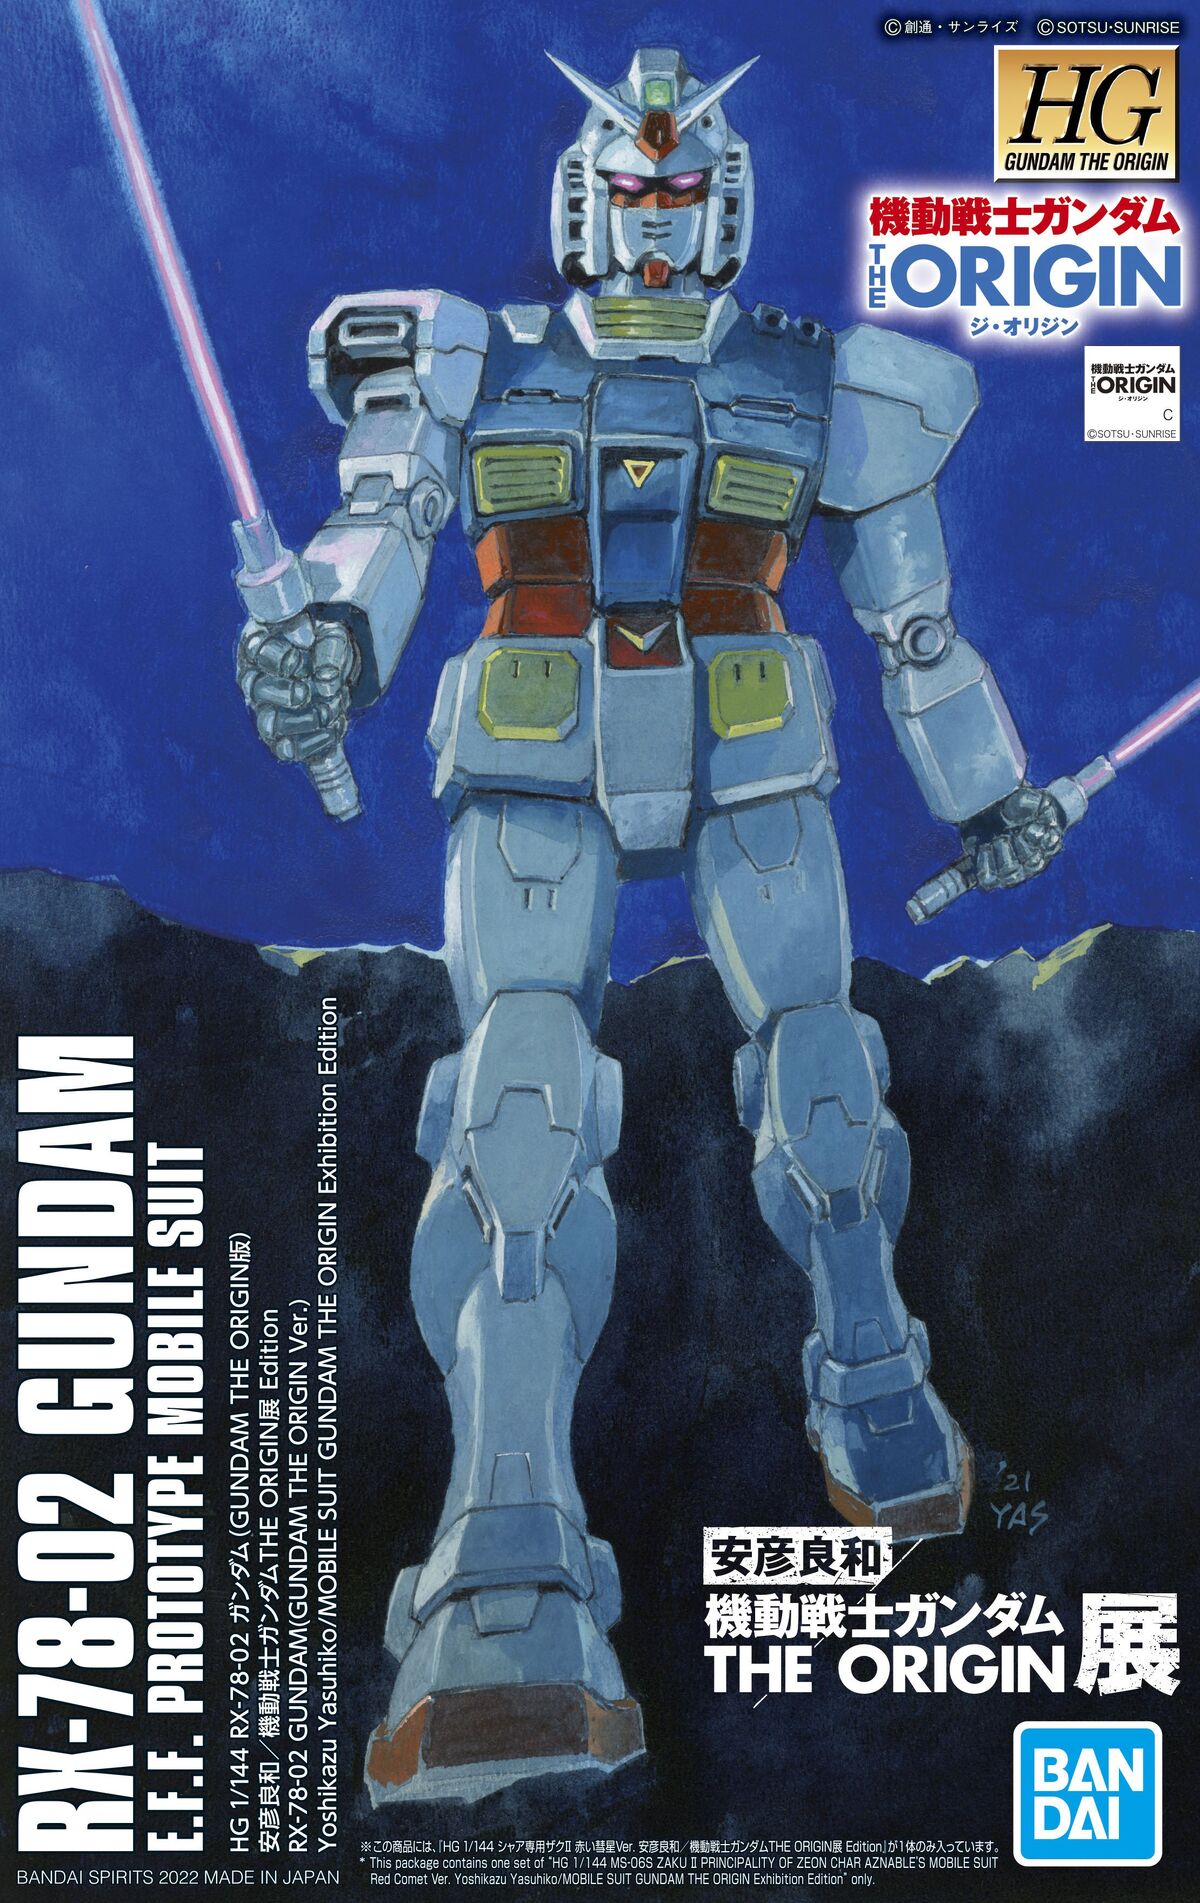 ジ・オリジン RX-78-02 ガンダム GUNDAM THE ORIGIN … - プラモデル